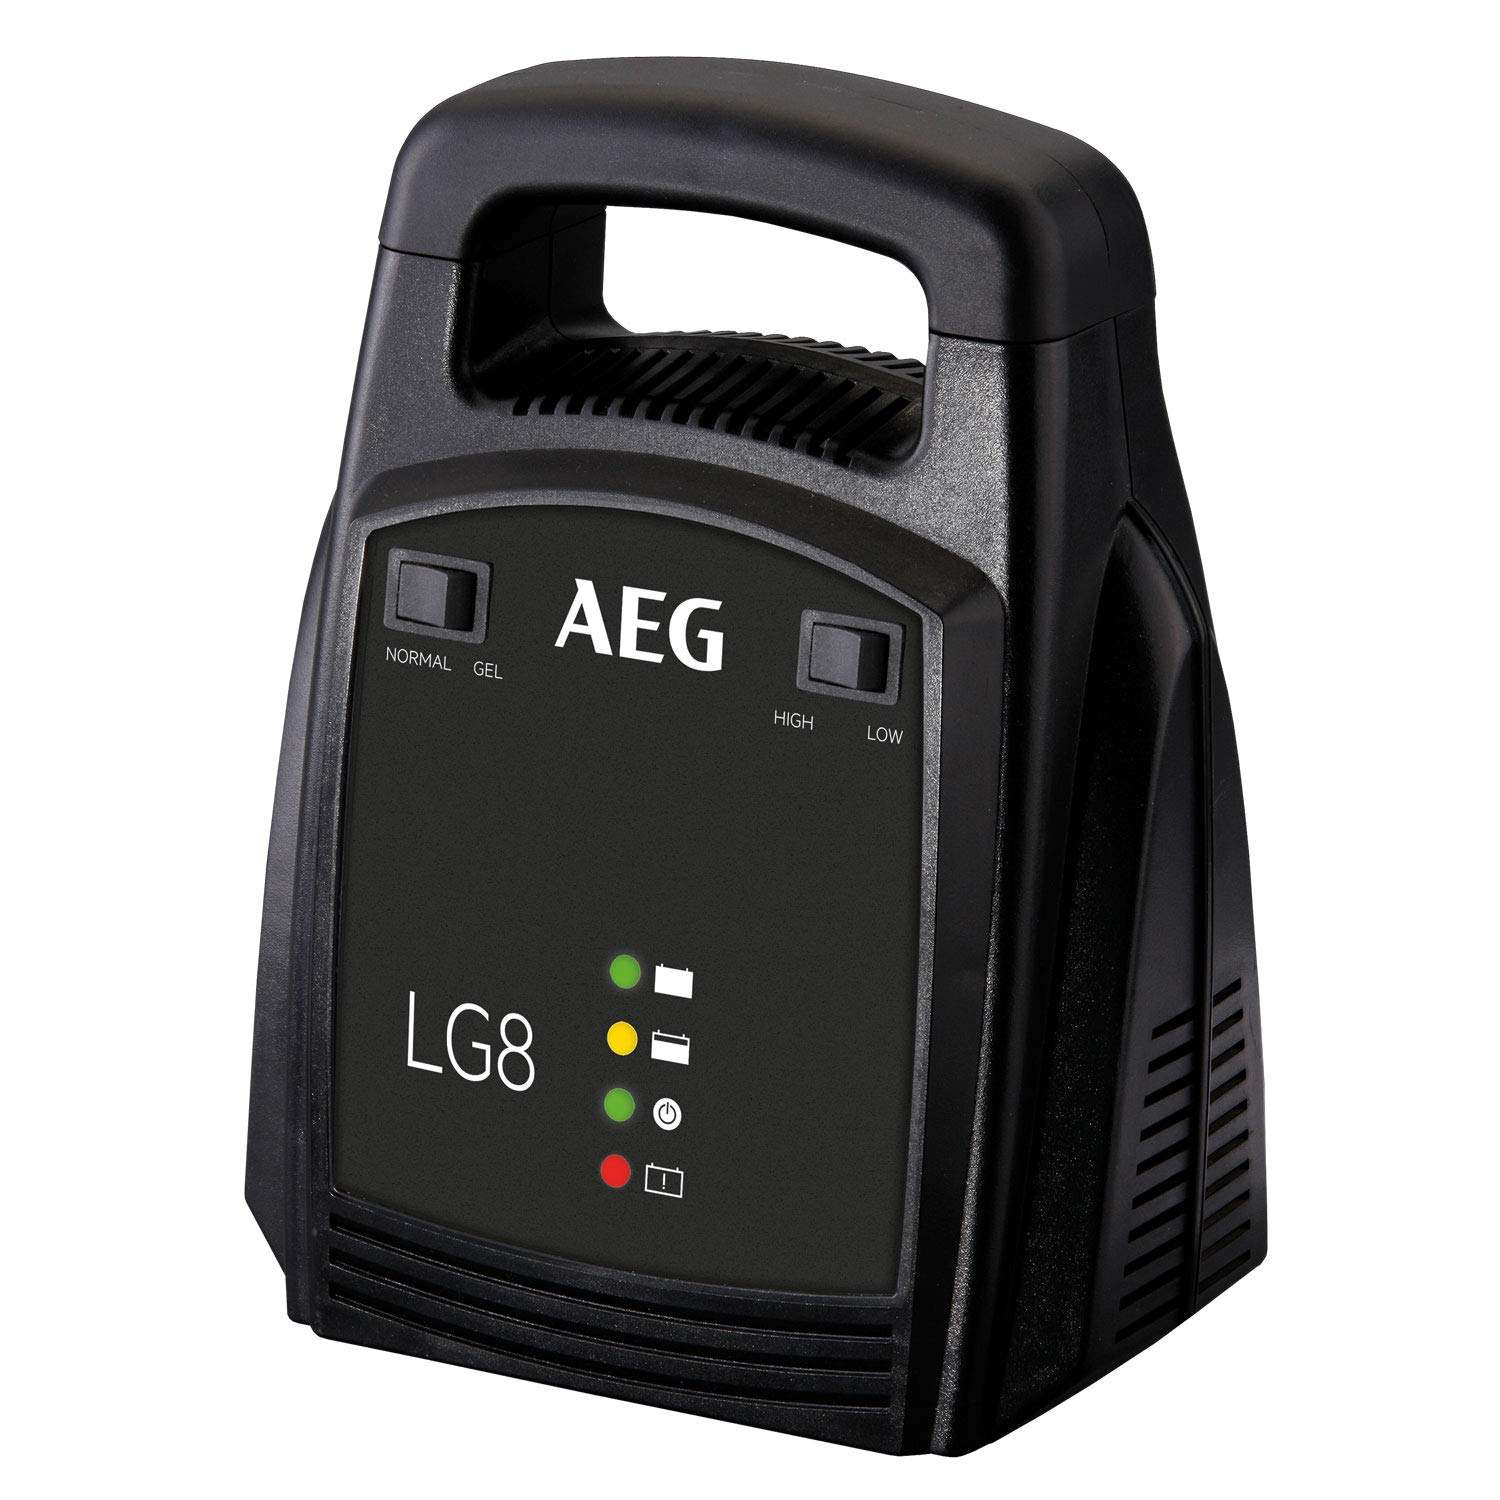 AEG Automotive 10273 Auto Batterie Ladegerät LG 8, 12 Volt/8 Ampere, mit LED Anzeige, schutzisolierte Batterieklemmen von AEG